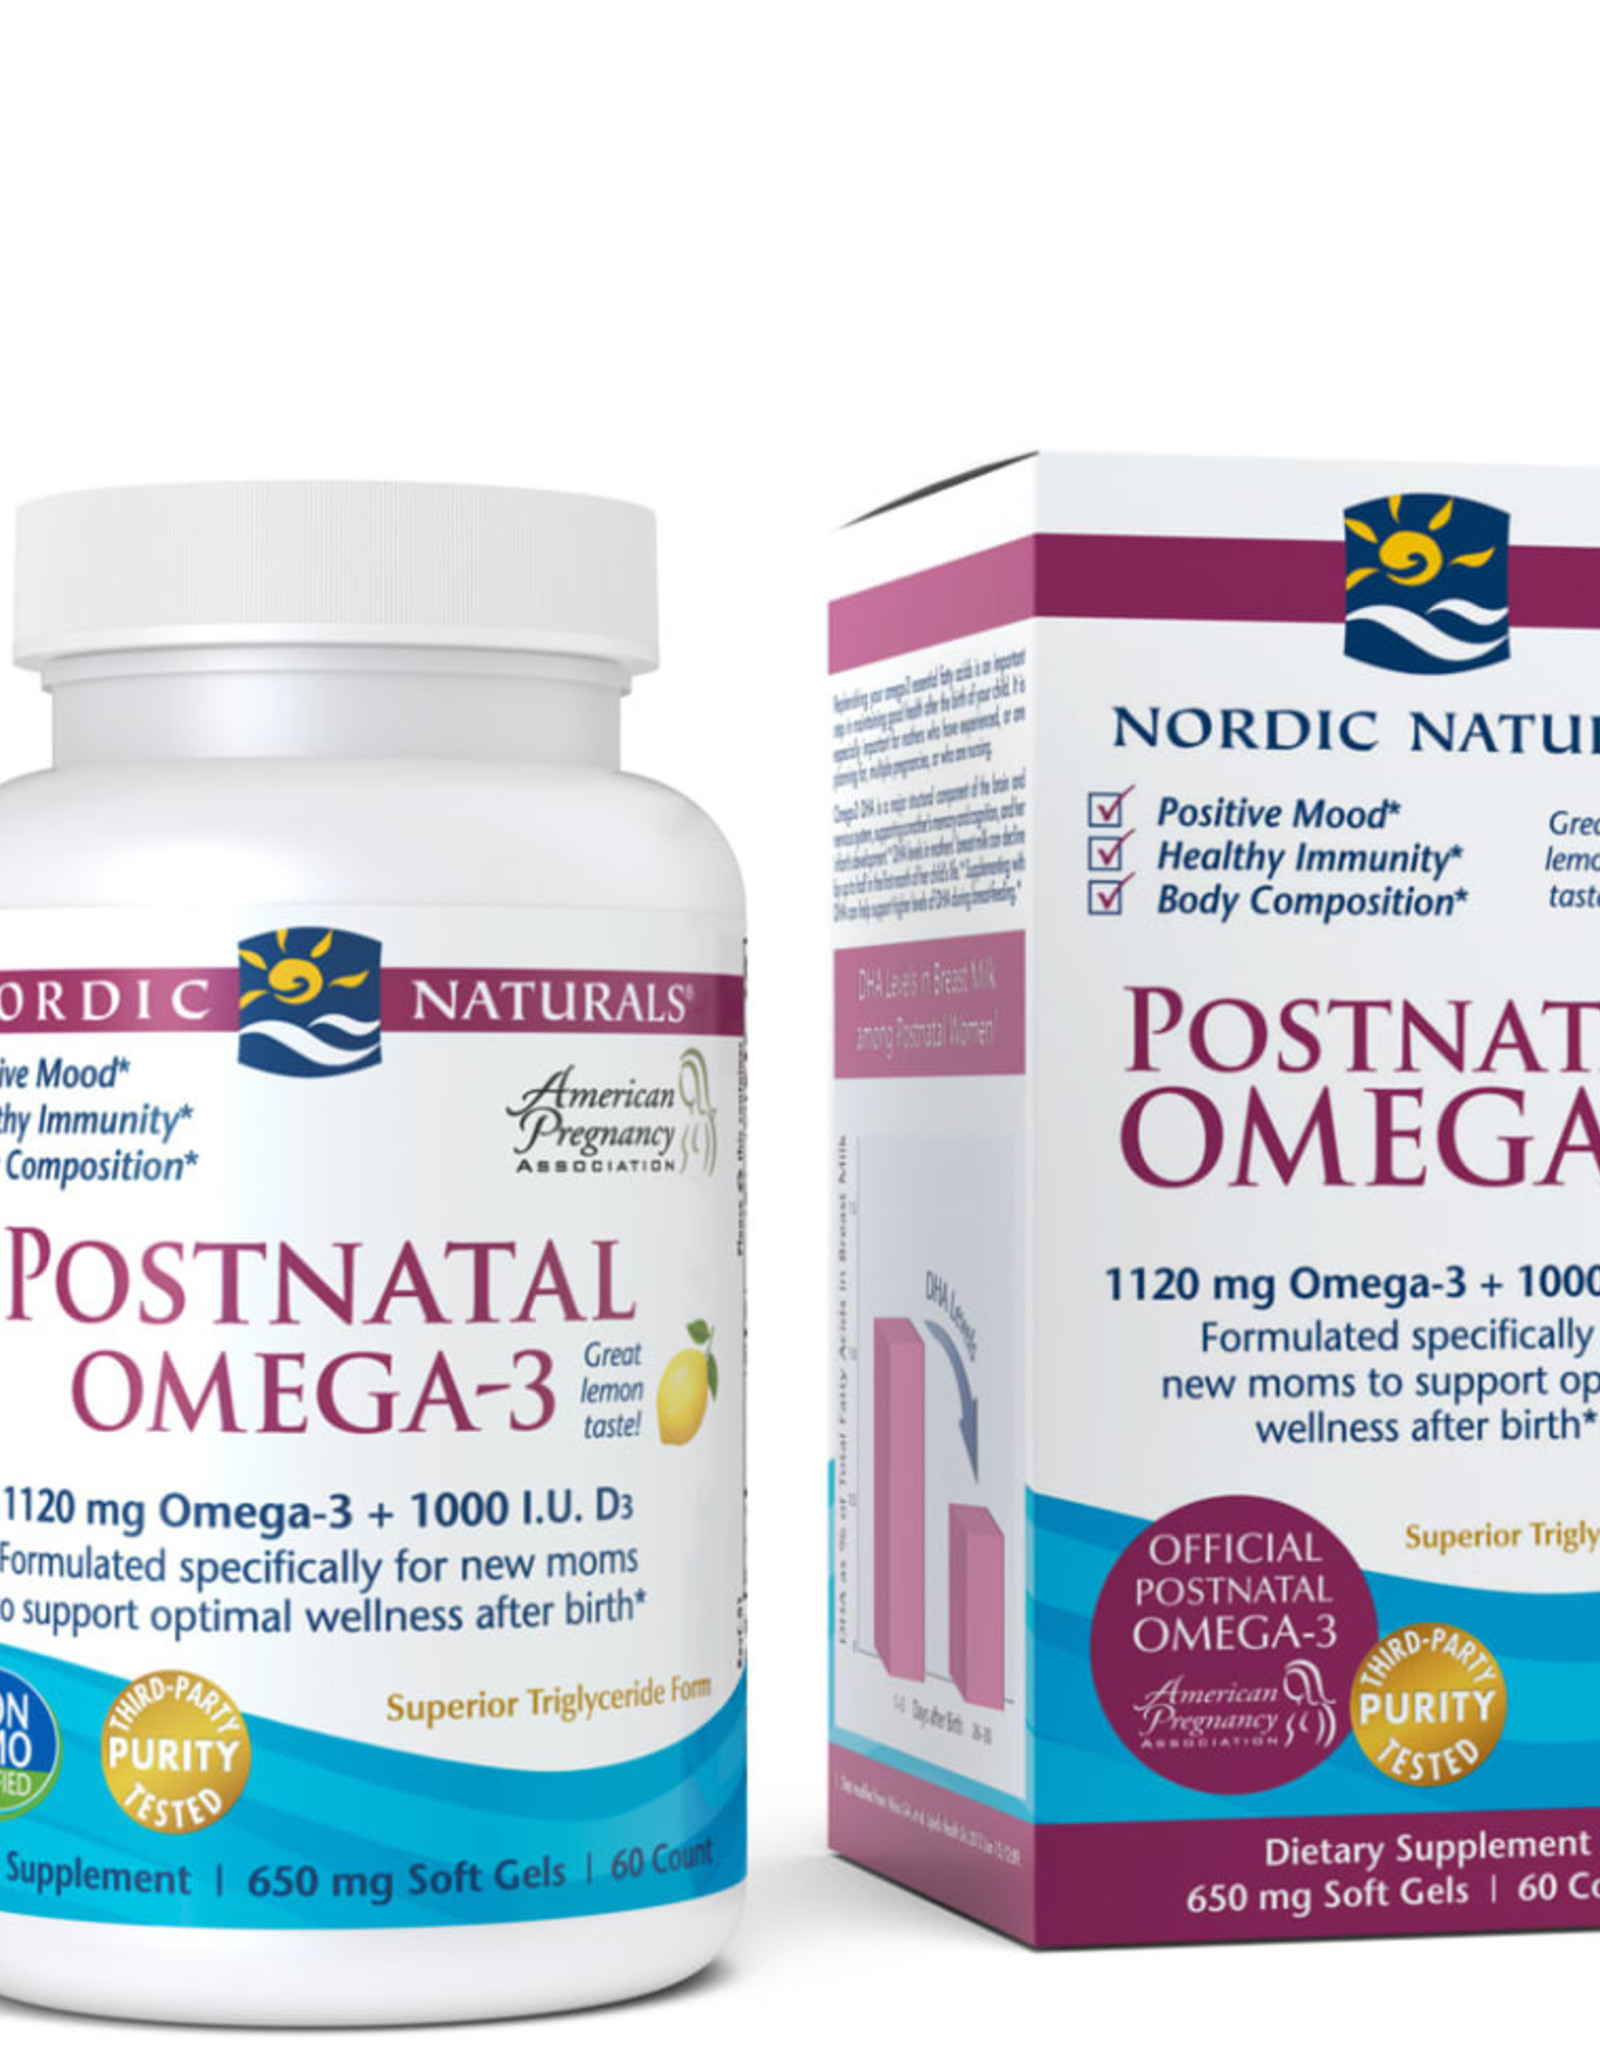 Nordic Naturals Postnatal Omega-3-Nordic Naturals